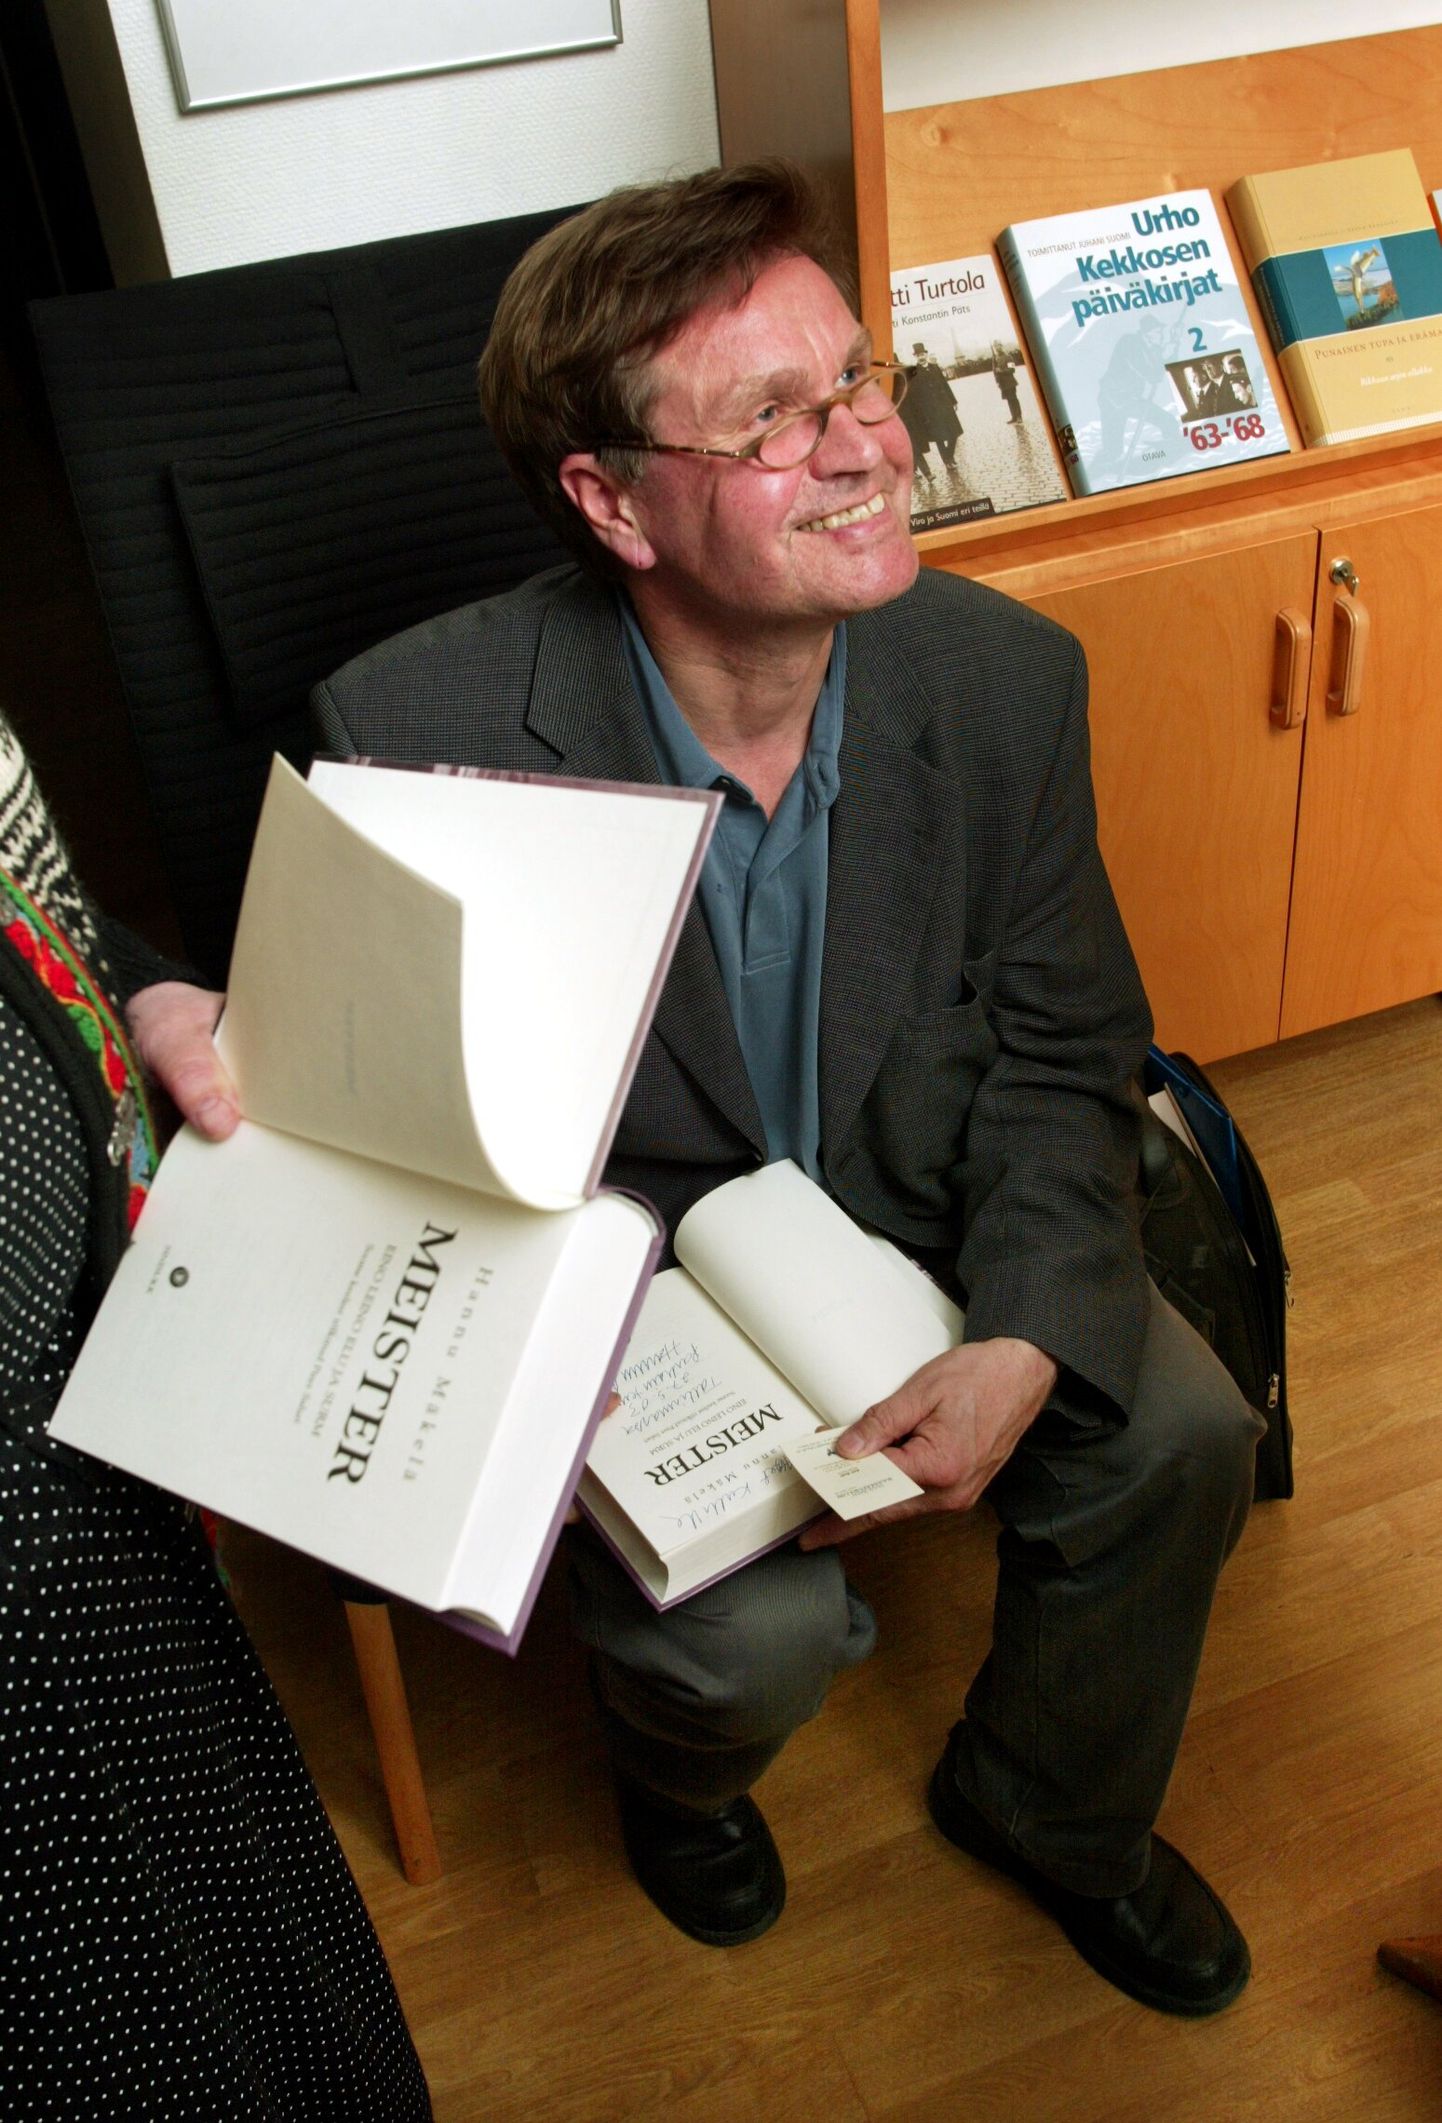 Hannu Mäkelä (pildil) raamatu "Meister" esitlus Soome instituudi ruumides. Raamatu tõlkis Piret Saluri.